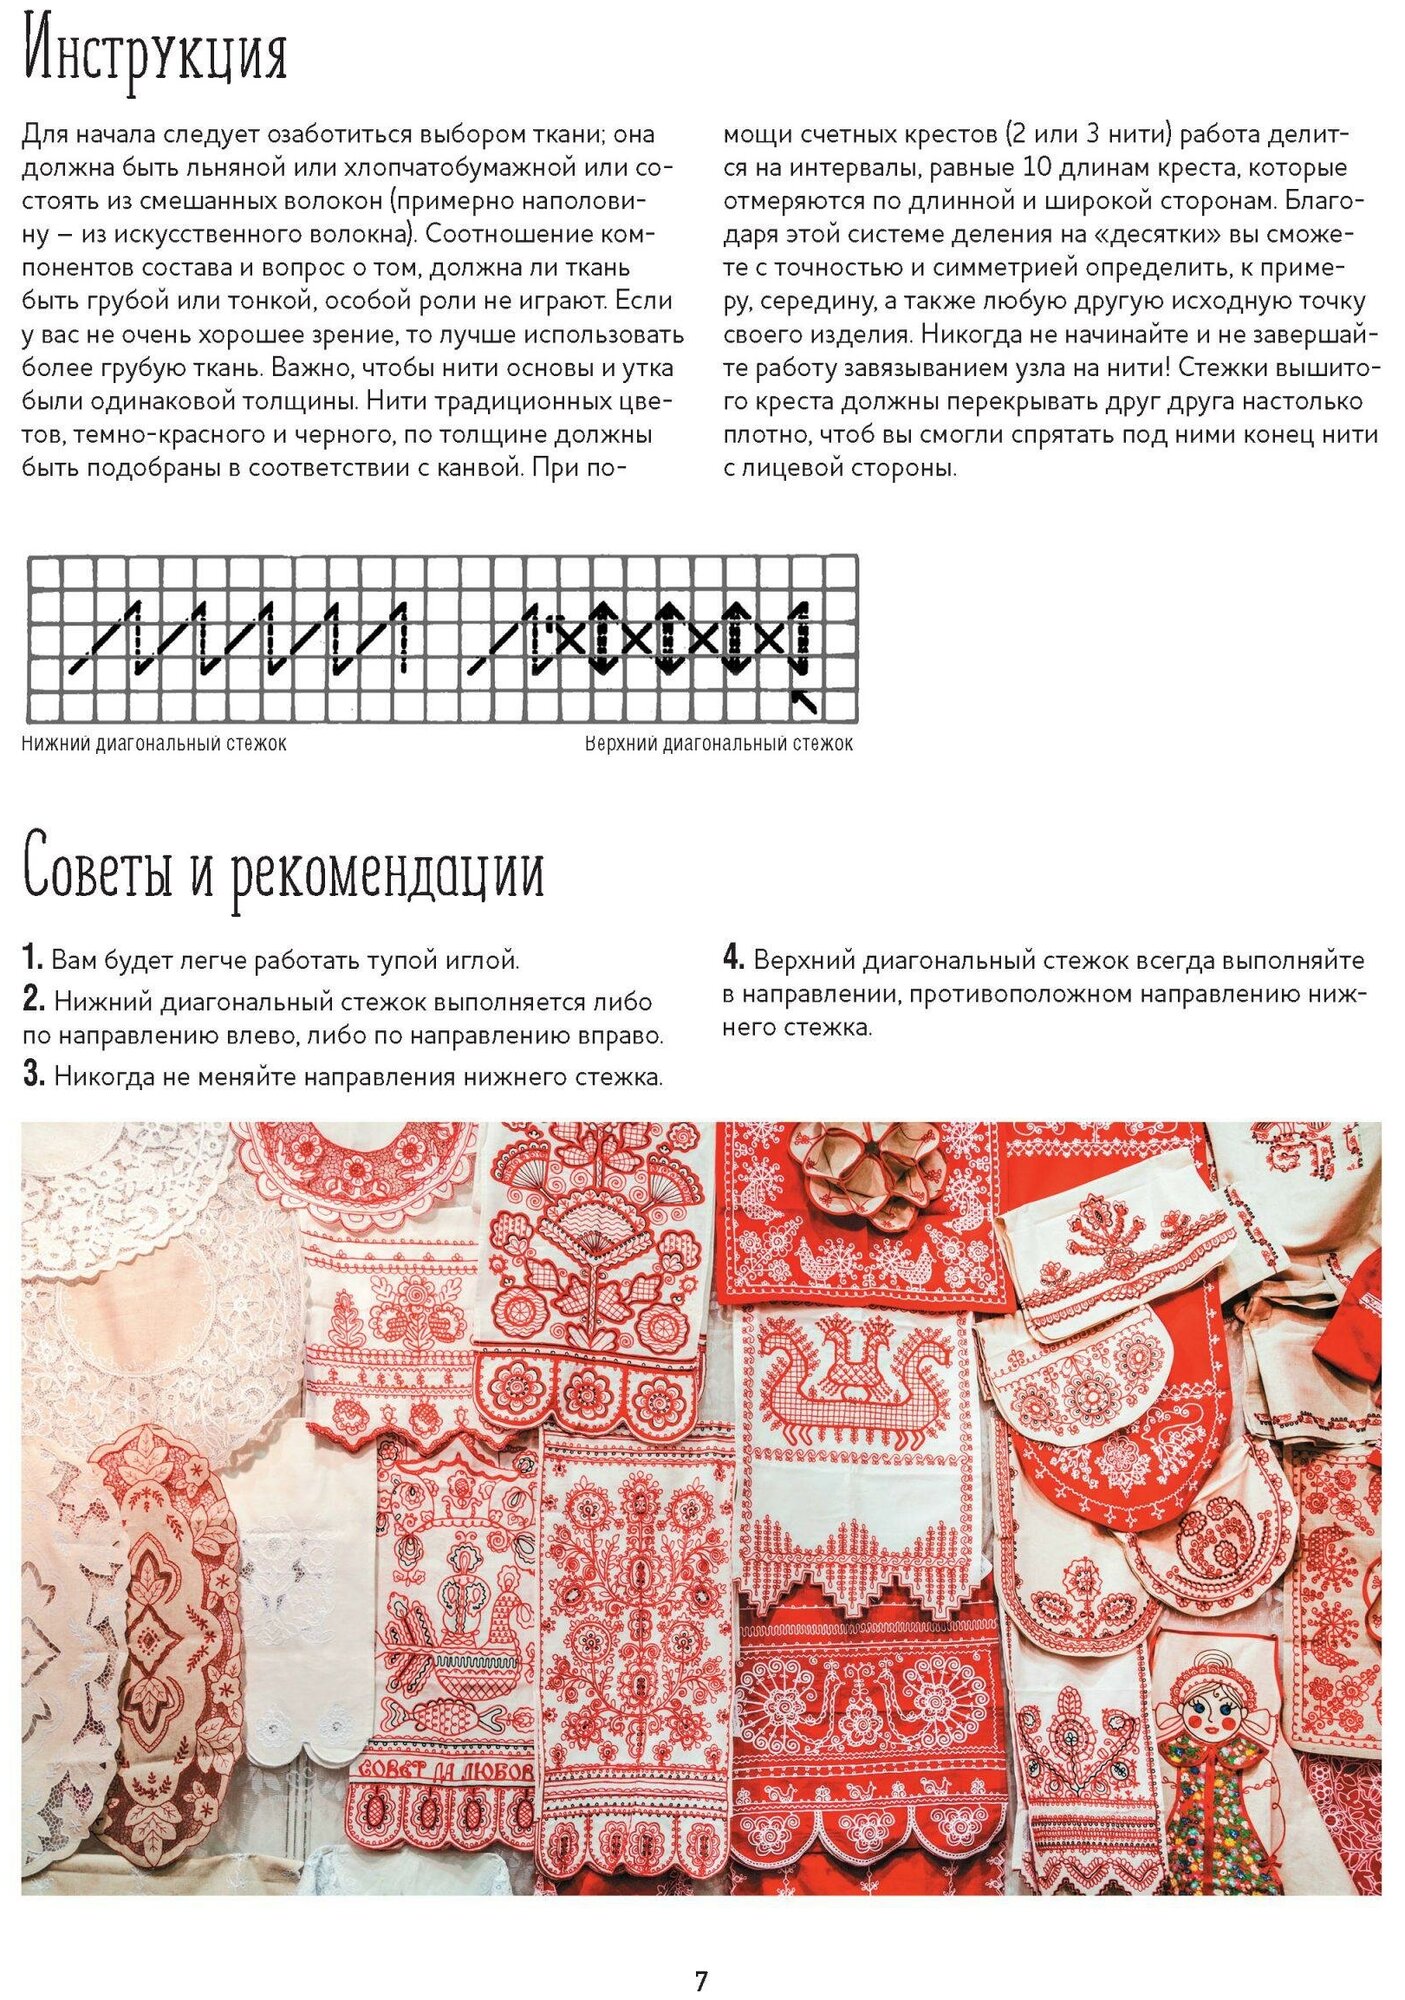 Русские узоры для вышивания крестом Более 100 подробных схем Коллекция вышивок собранная К Д Далматовым и исполненная в 1889 году - фото №4